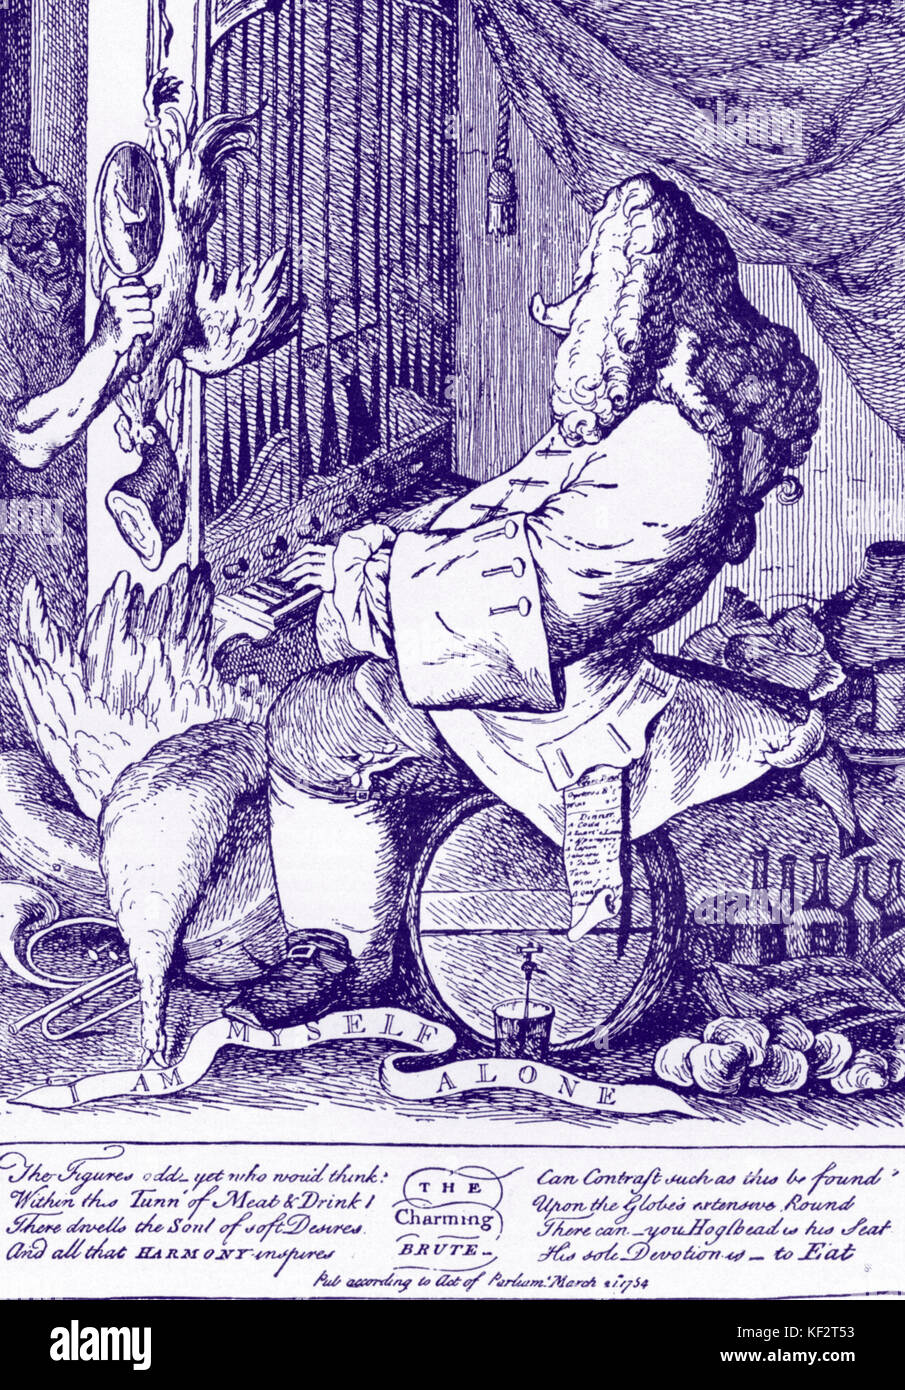 Händel, Georg Friedrich. "Die charmante Brute". Deutsch-englischer Komponist, 1685-1759. Händel Karikatur von Goupy, 1754. Stockfoto